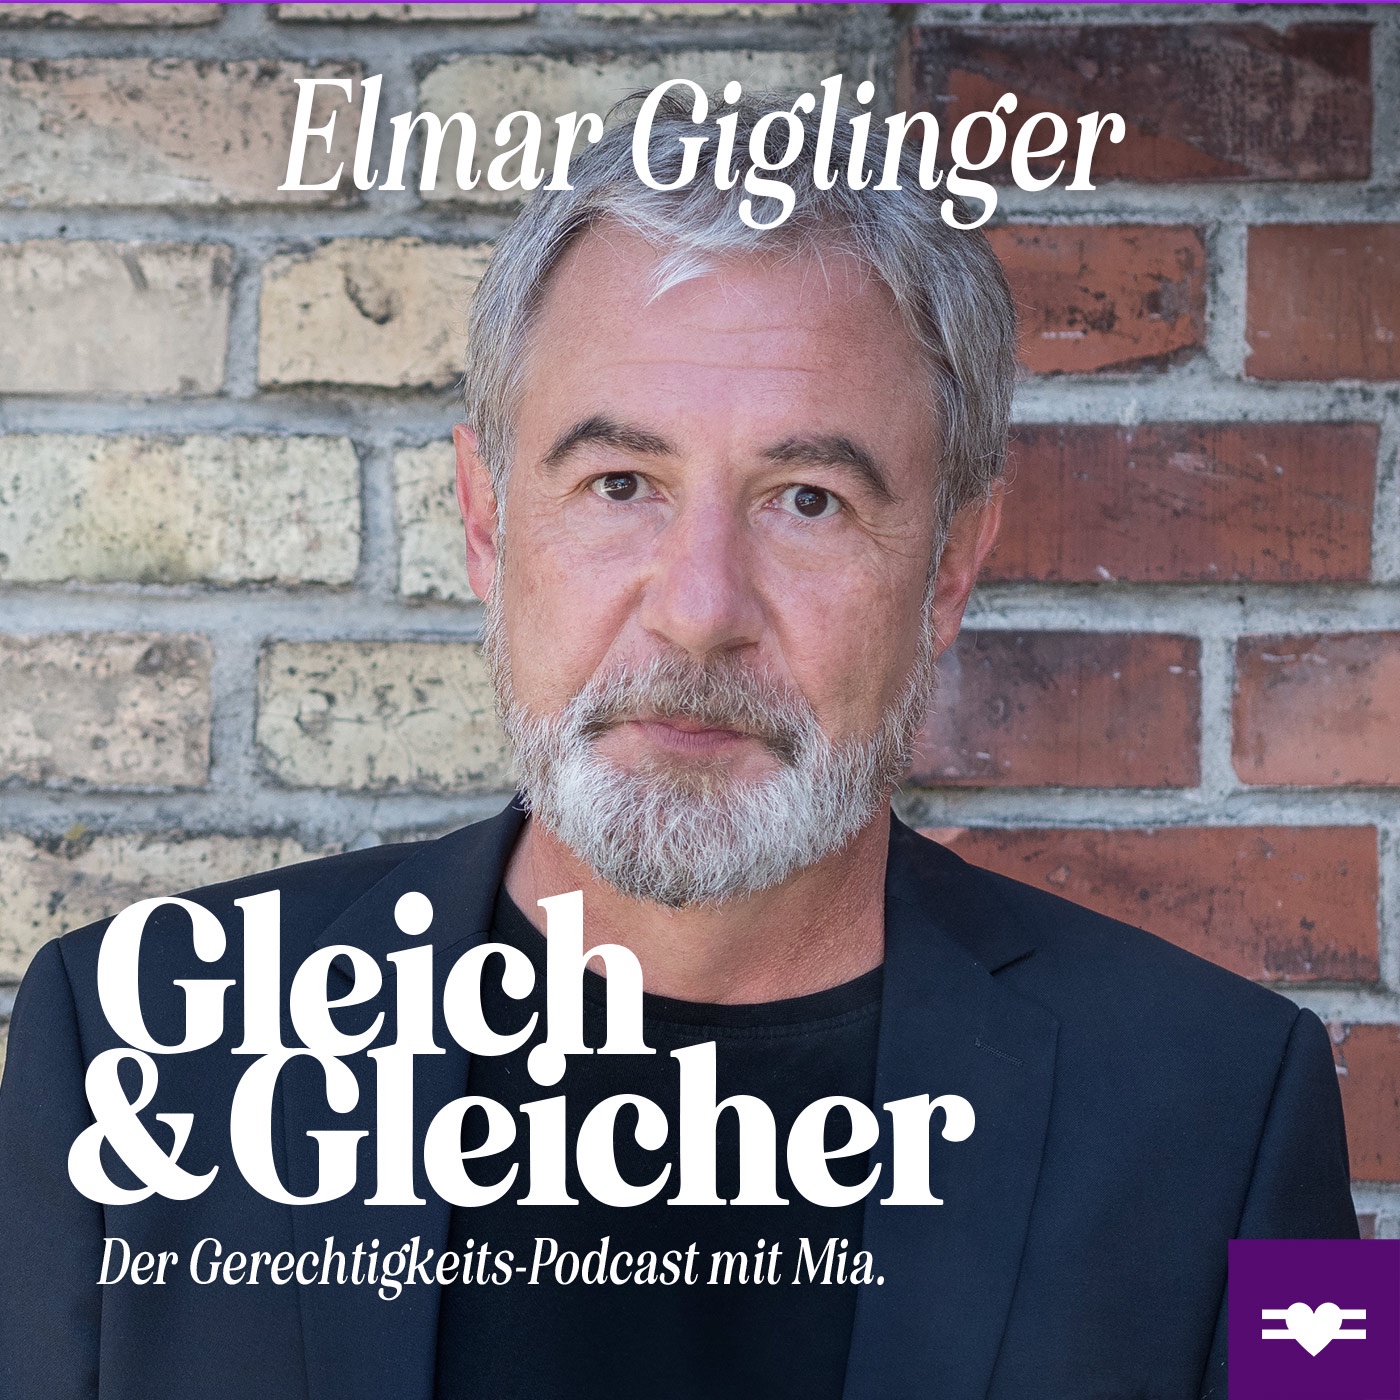 Elmar Giglinger über Haltung, Offenheit und Verständnis